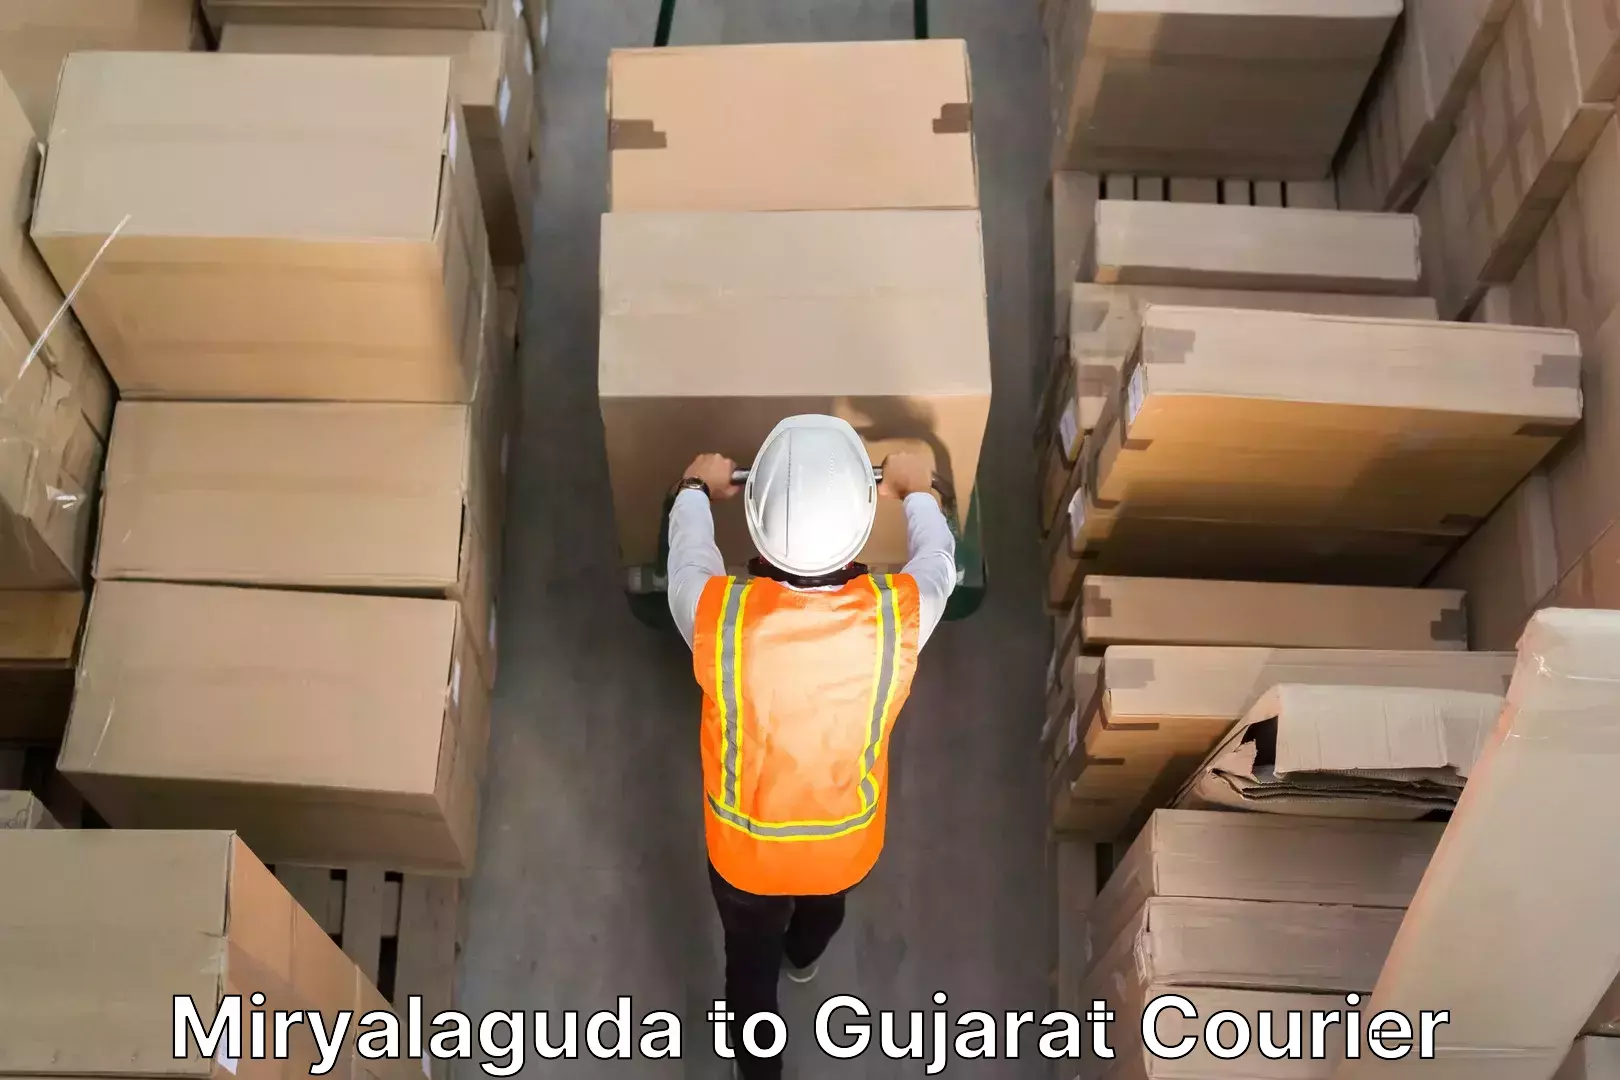 Professional furniture movers Miryalaguda to Gujarat